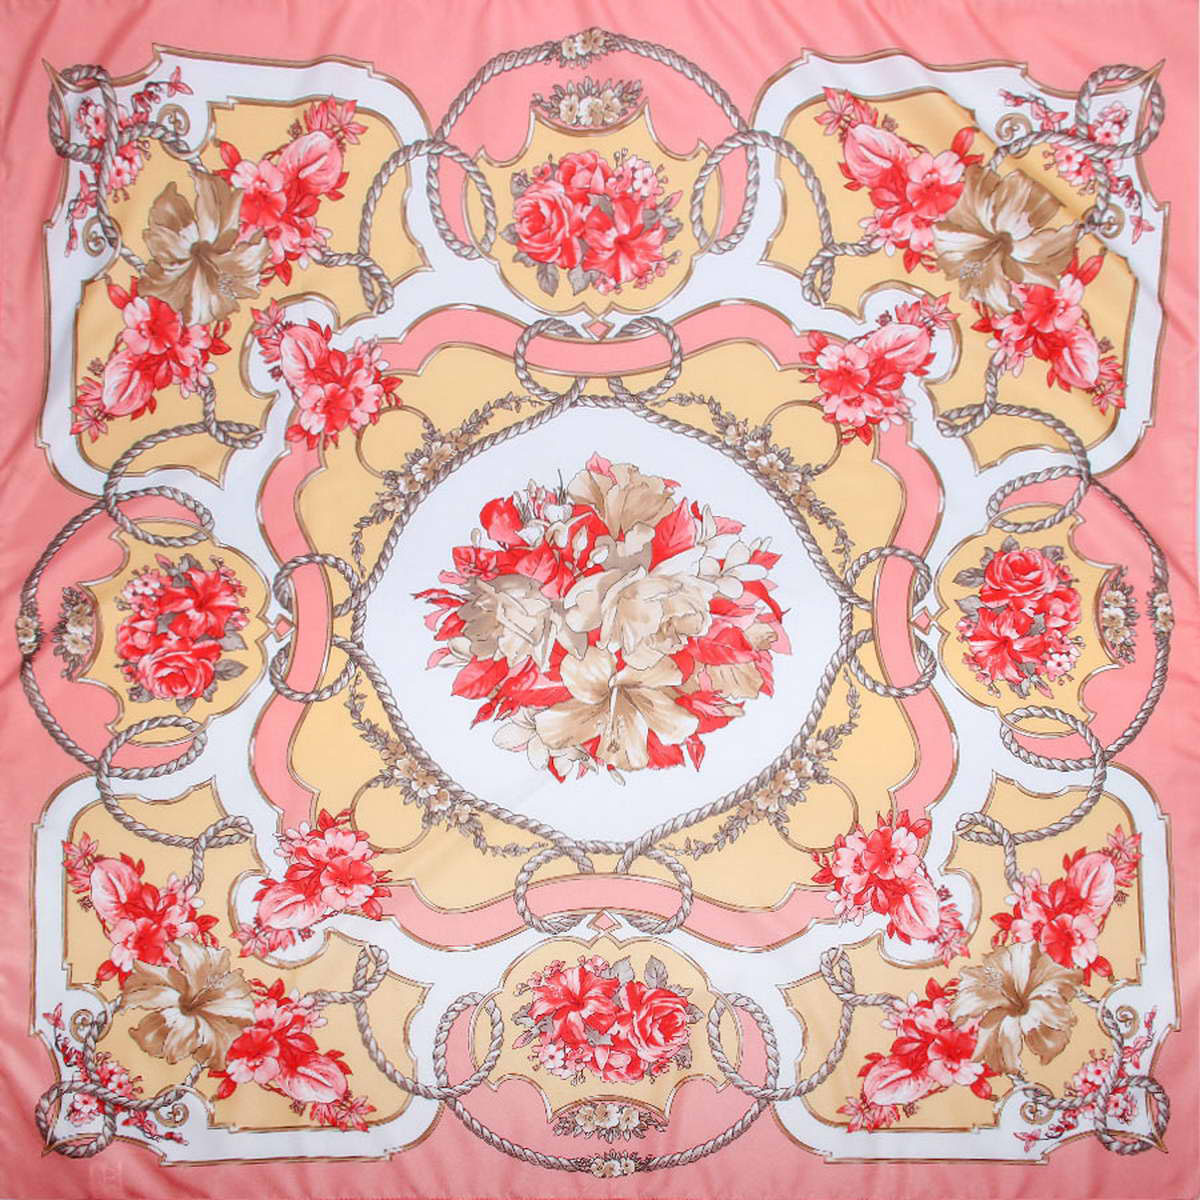 Платок женский Venera, цвет: розовый, бежевый, красный. 3904972-11. Размер 90 см х 90 см